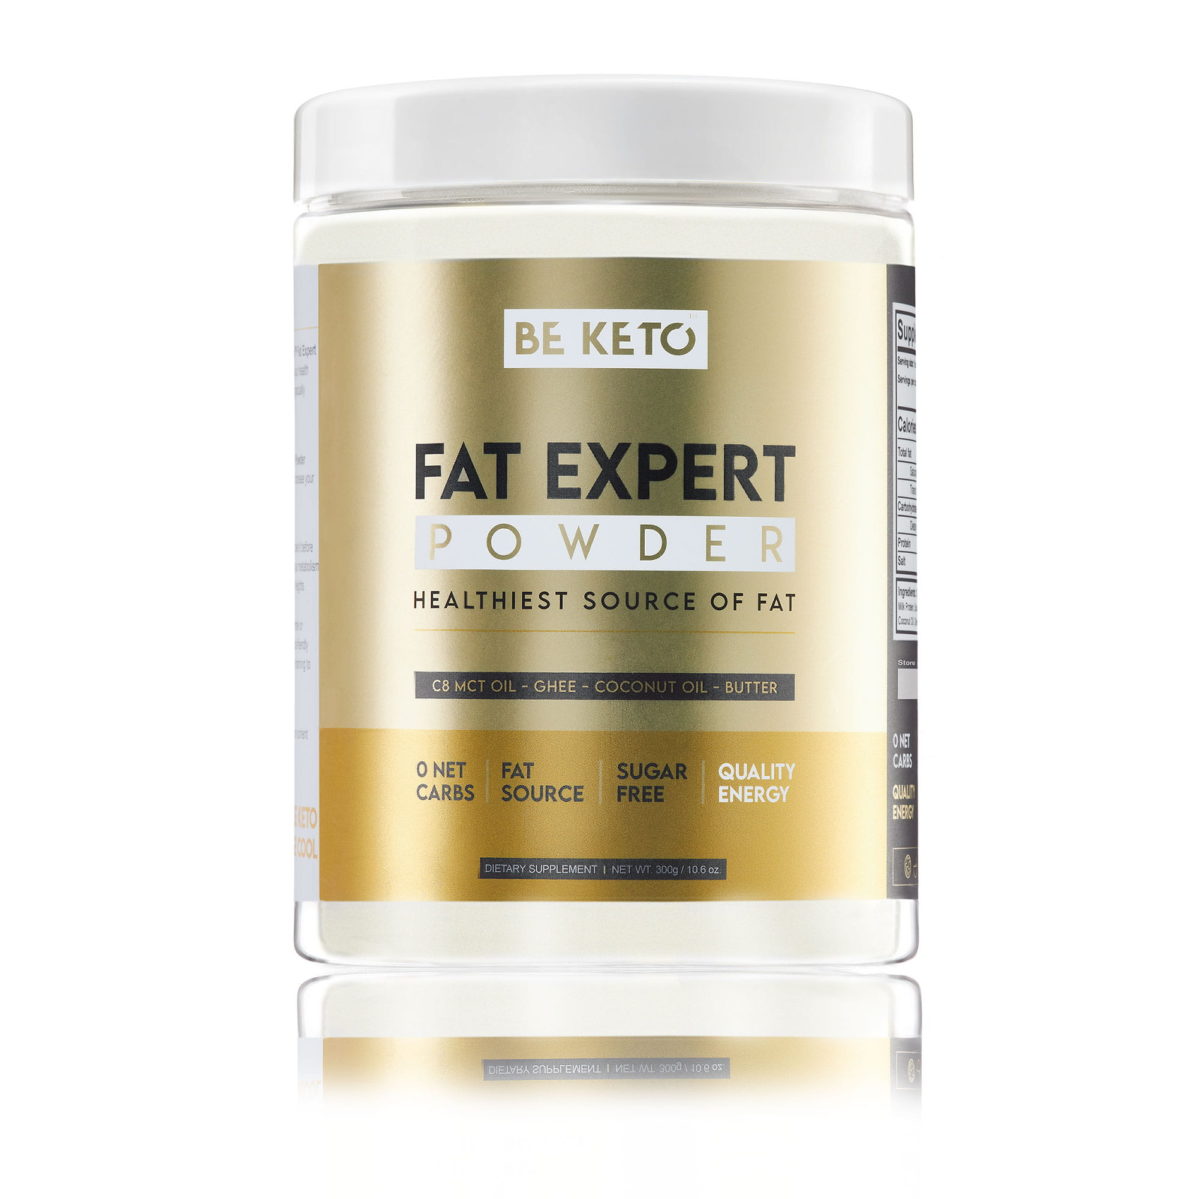 Produkt od BeKeto w pięknej złotej puszce 300g fat Expert Powder.